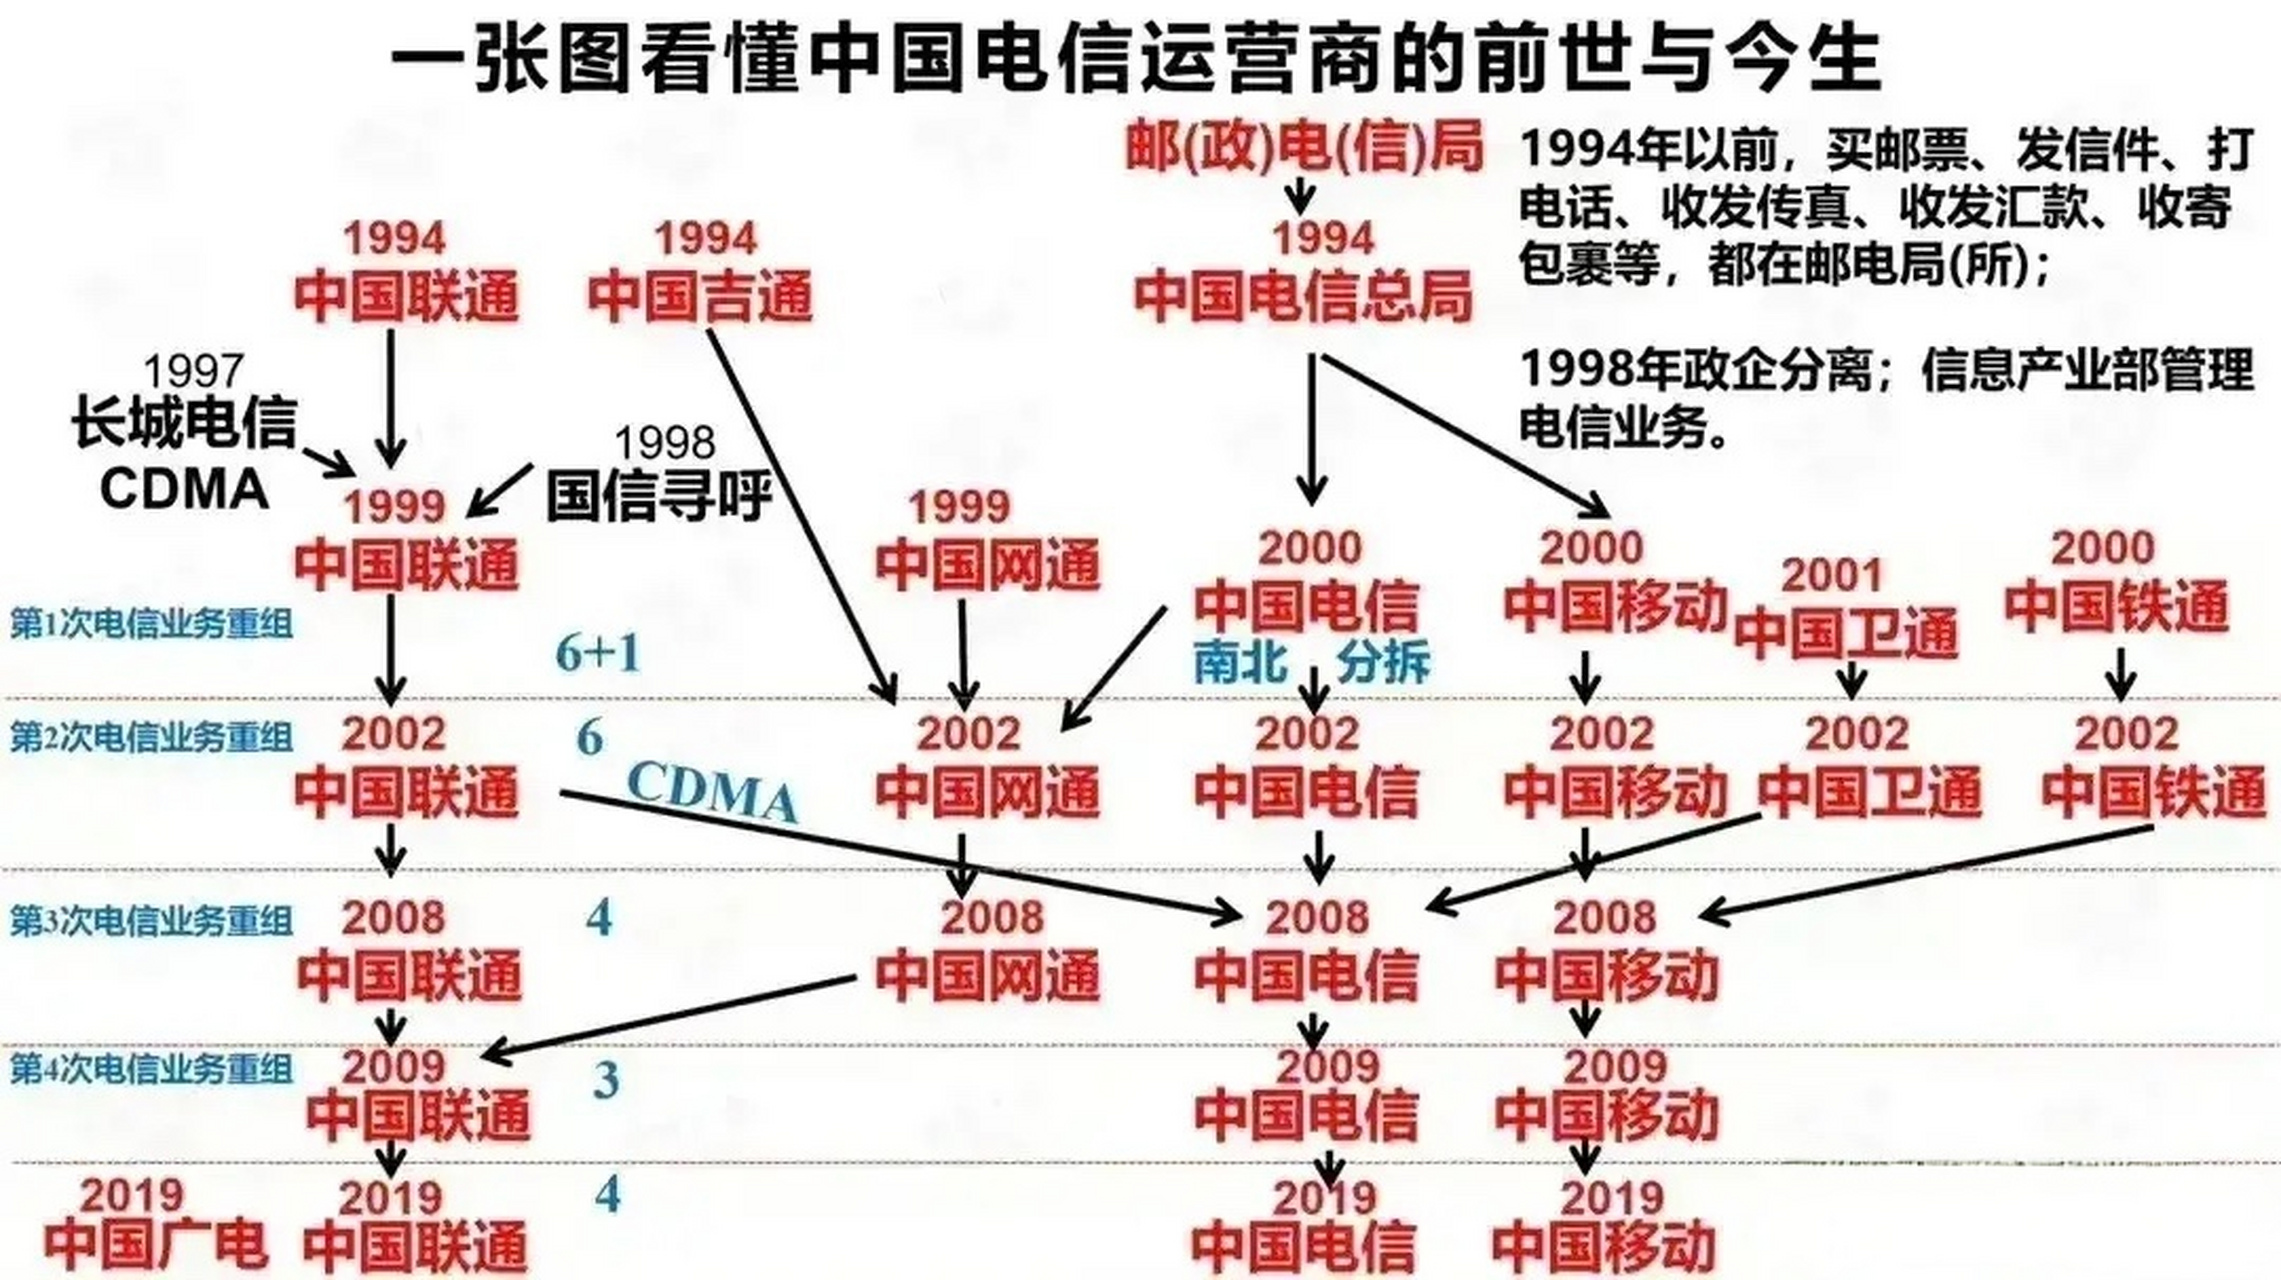 一图看懂中国三大电信运营商的前世今生![并不简单]